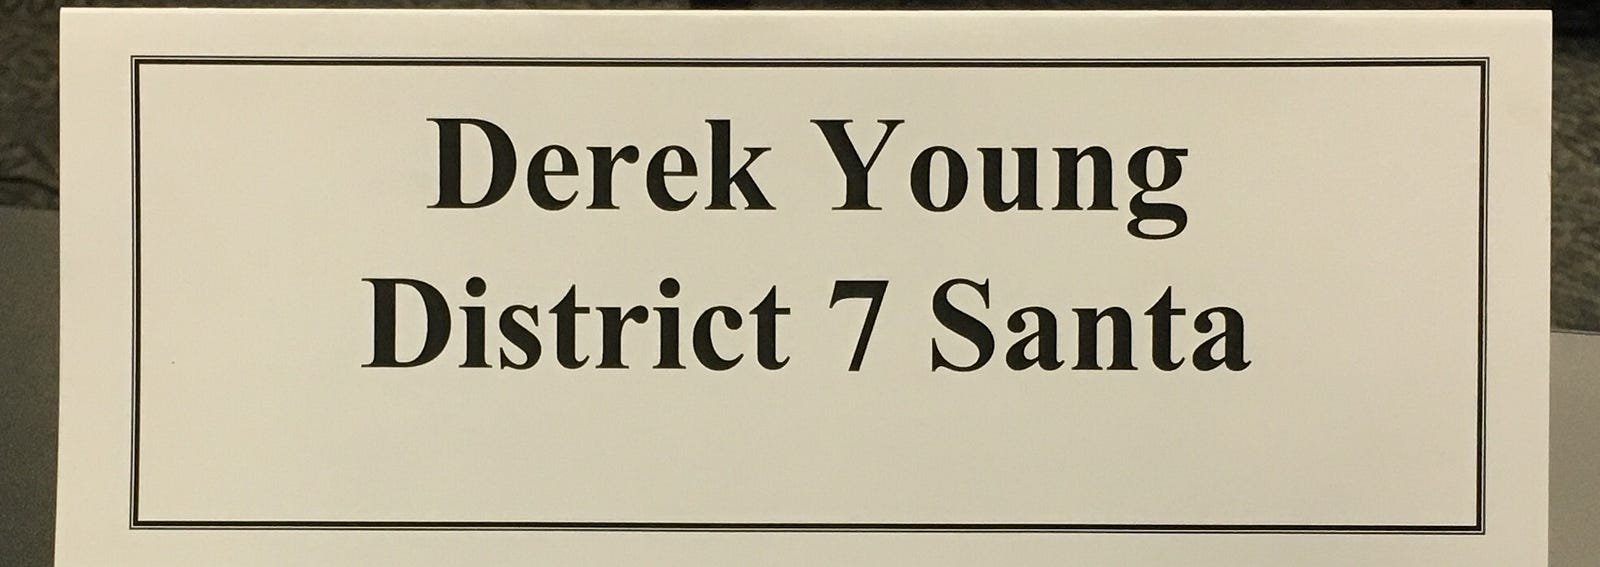 Nameplate saying: "Derek Young, District 7 Santa."